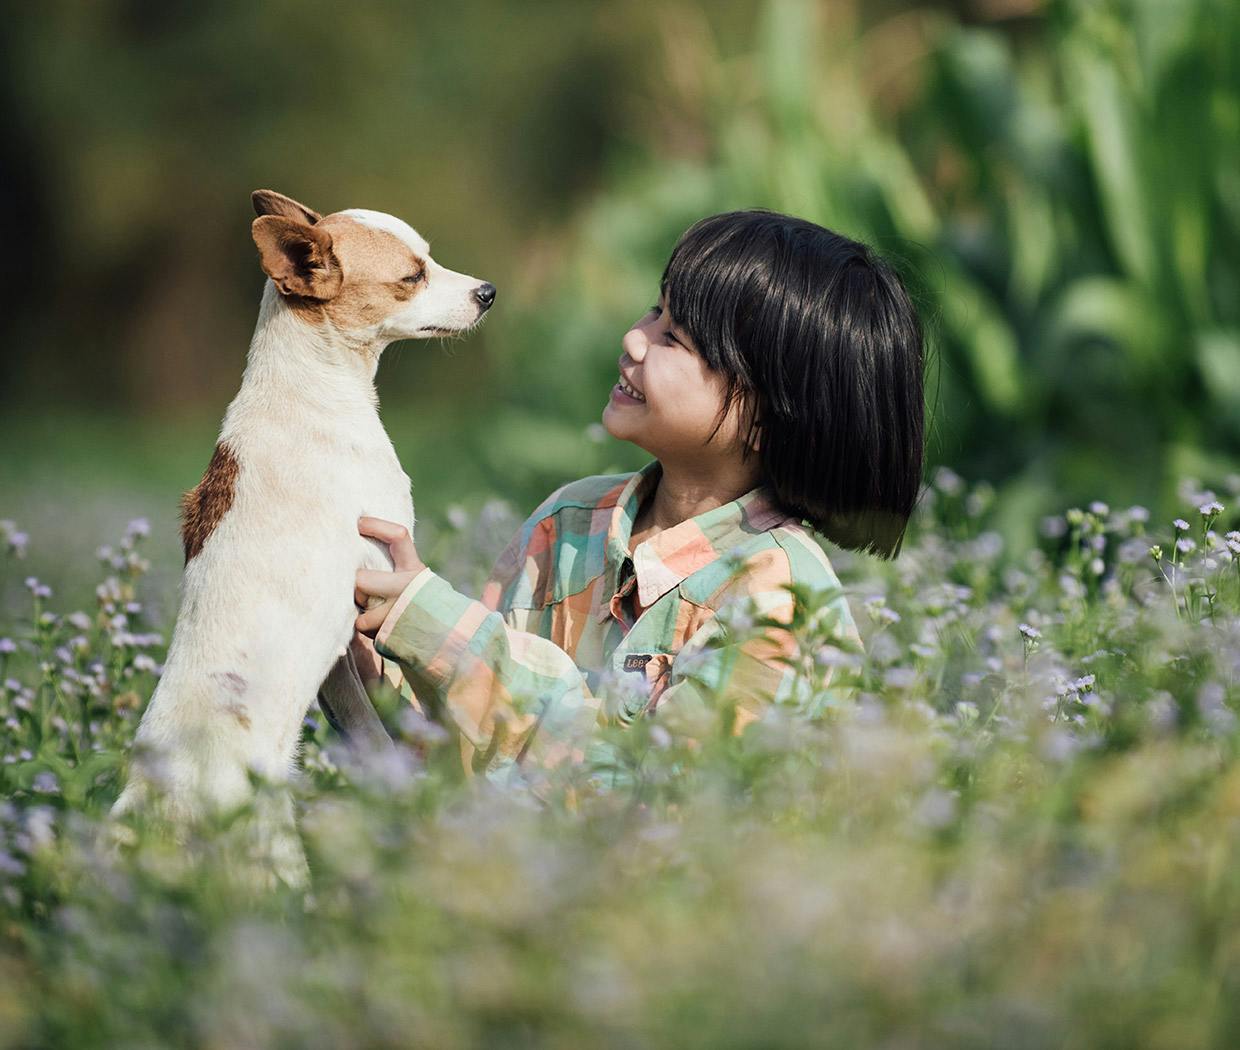 꽃밭에서 아이와 개가 눈높이를 맞춰 서로를 바라보고 있음